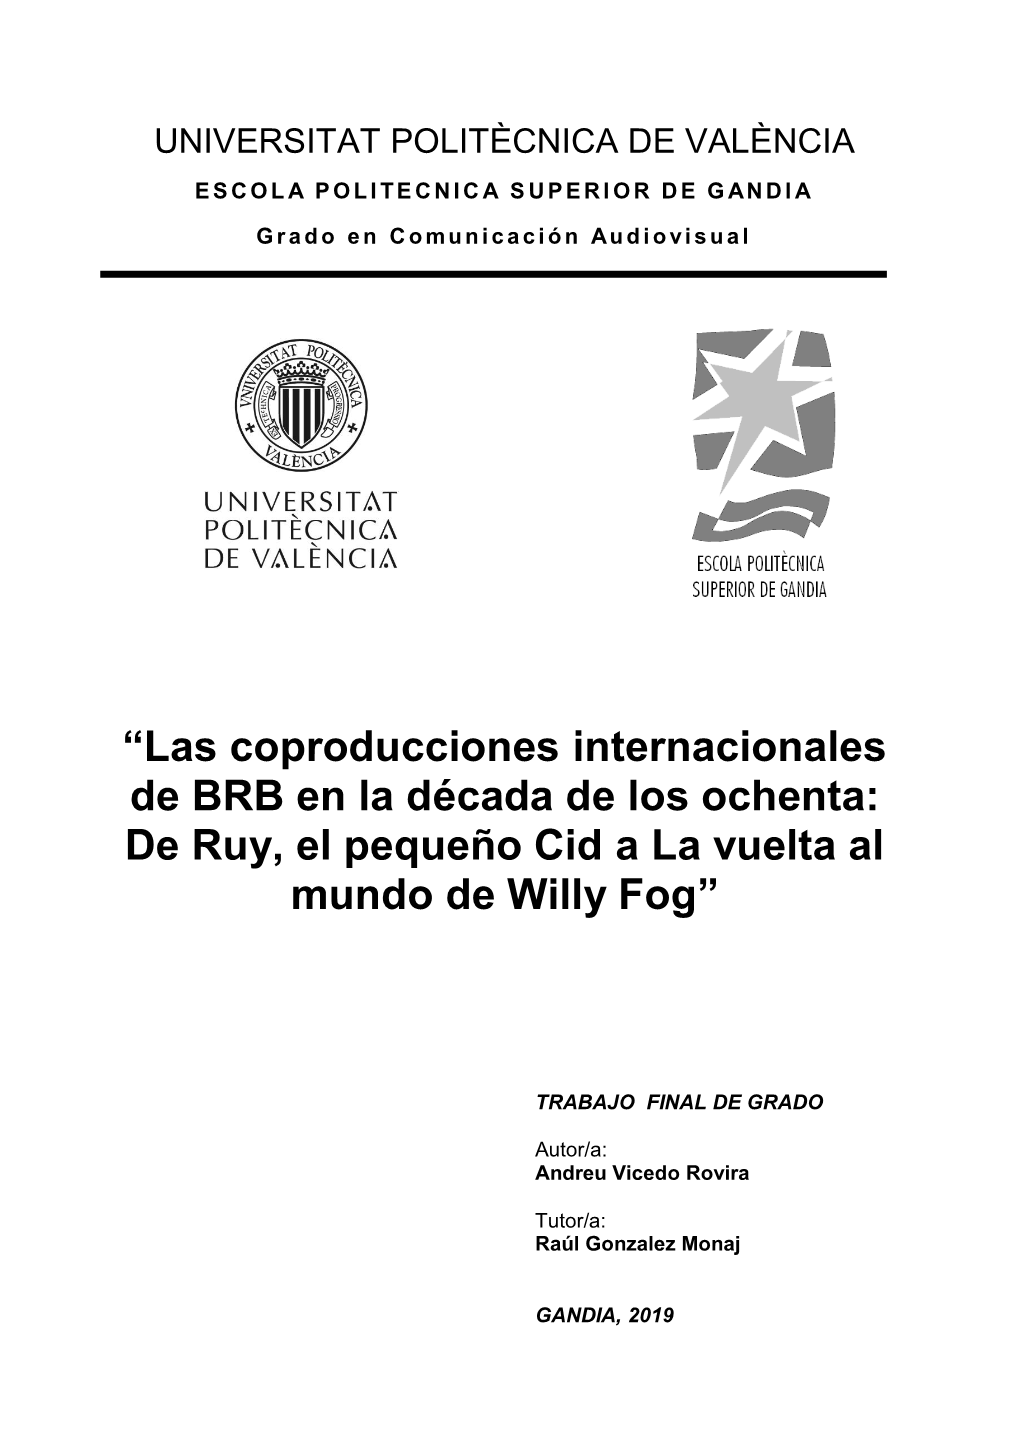 Las Coproducciones Internacionales De BRB En La Década De Los Ochenta: De Ruy, El Pequeño Cid a La Vuelta Al Mundo De Willy Fog”